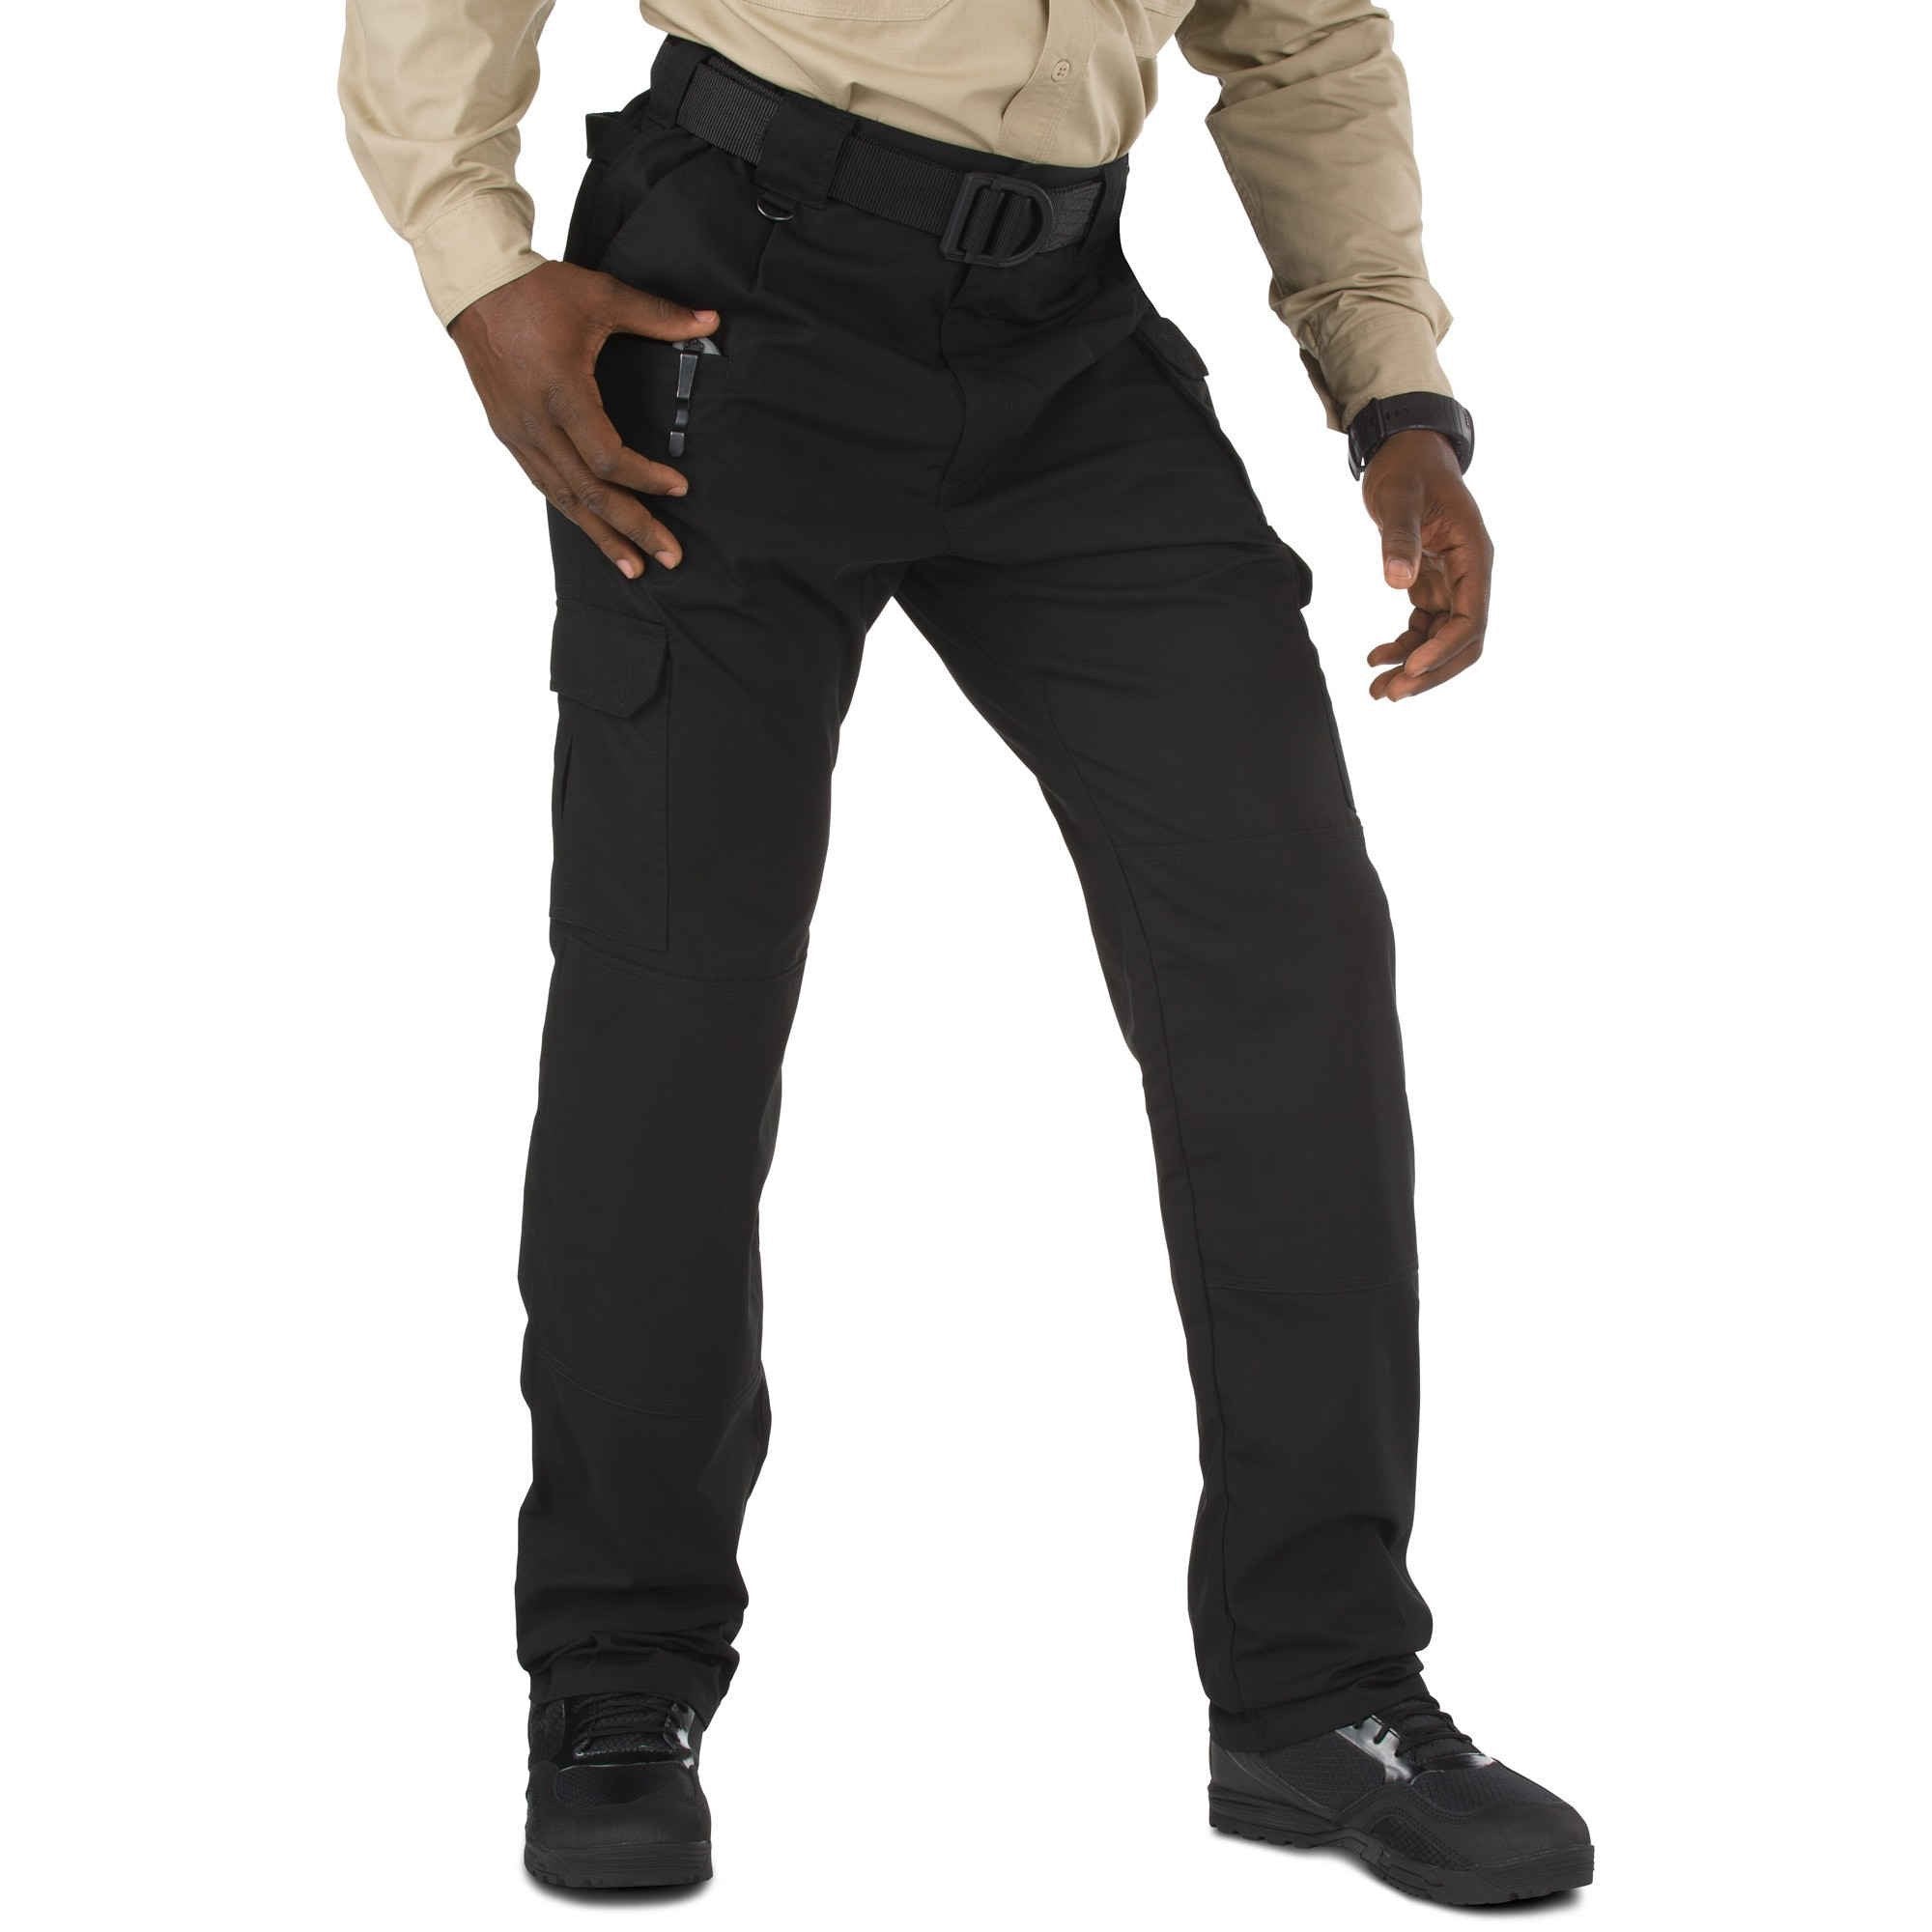 5.11 Tactical Taclite Pro Pants - Black Pants 5.11 Tactical 28 30 Tactical Gear Supplier Tactical Distributors Australia